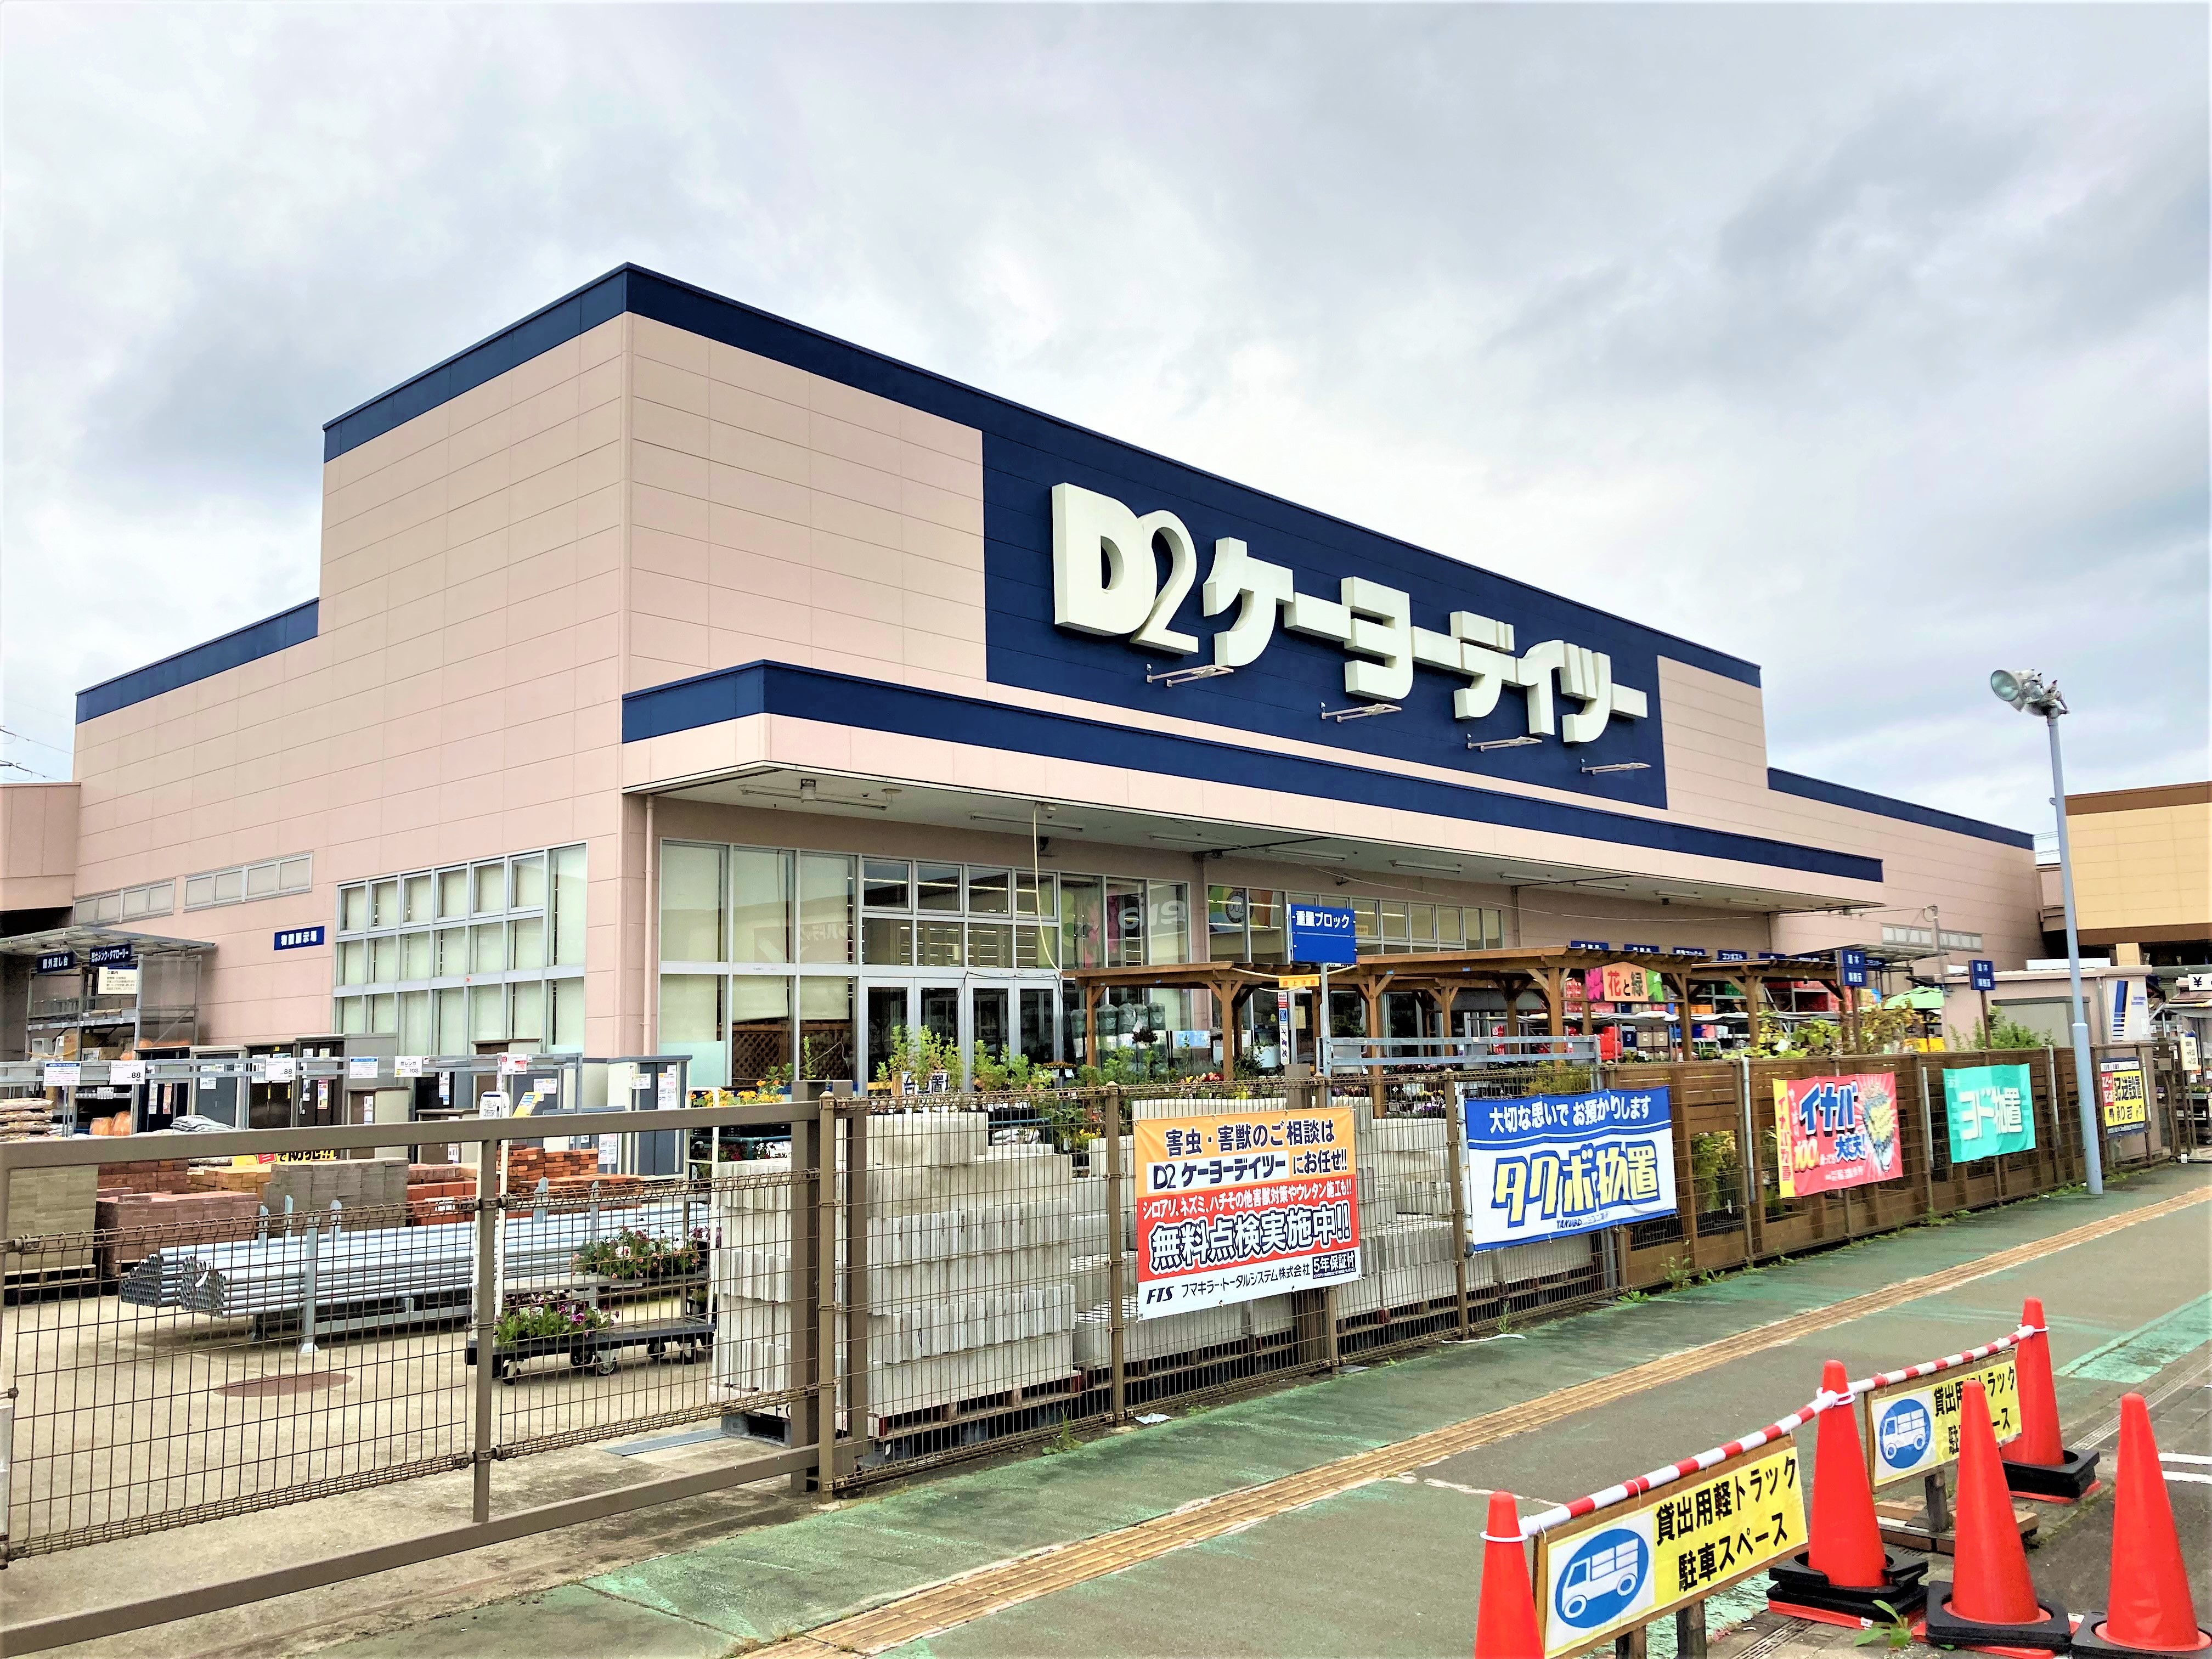 ケーヨーデイツー山田鈎取店